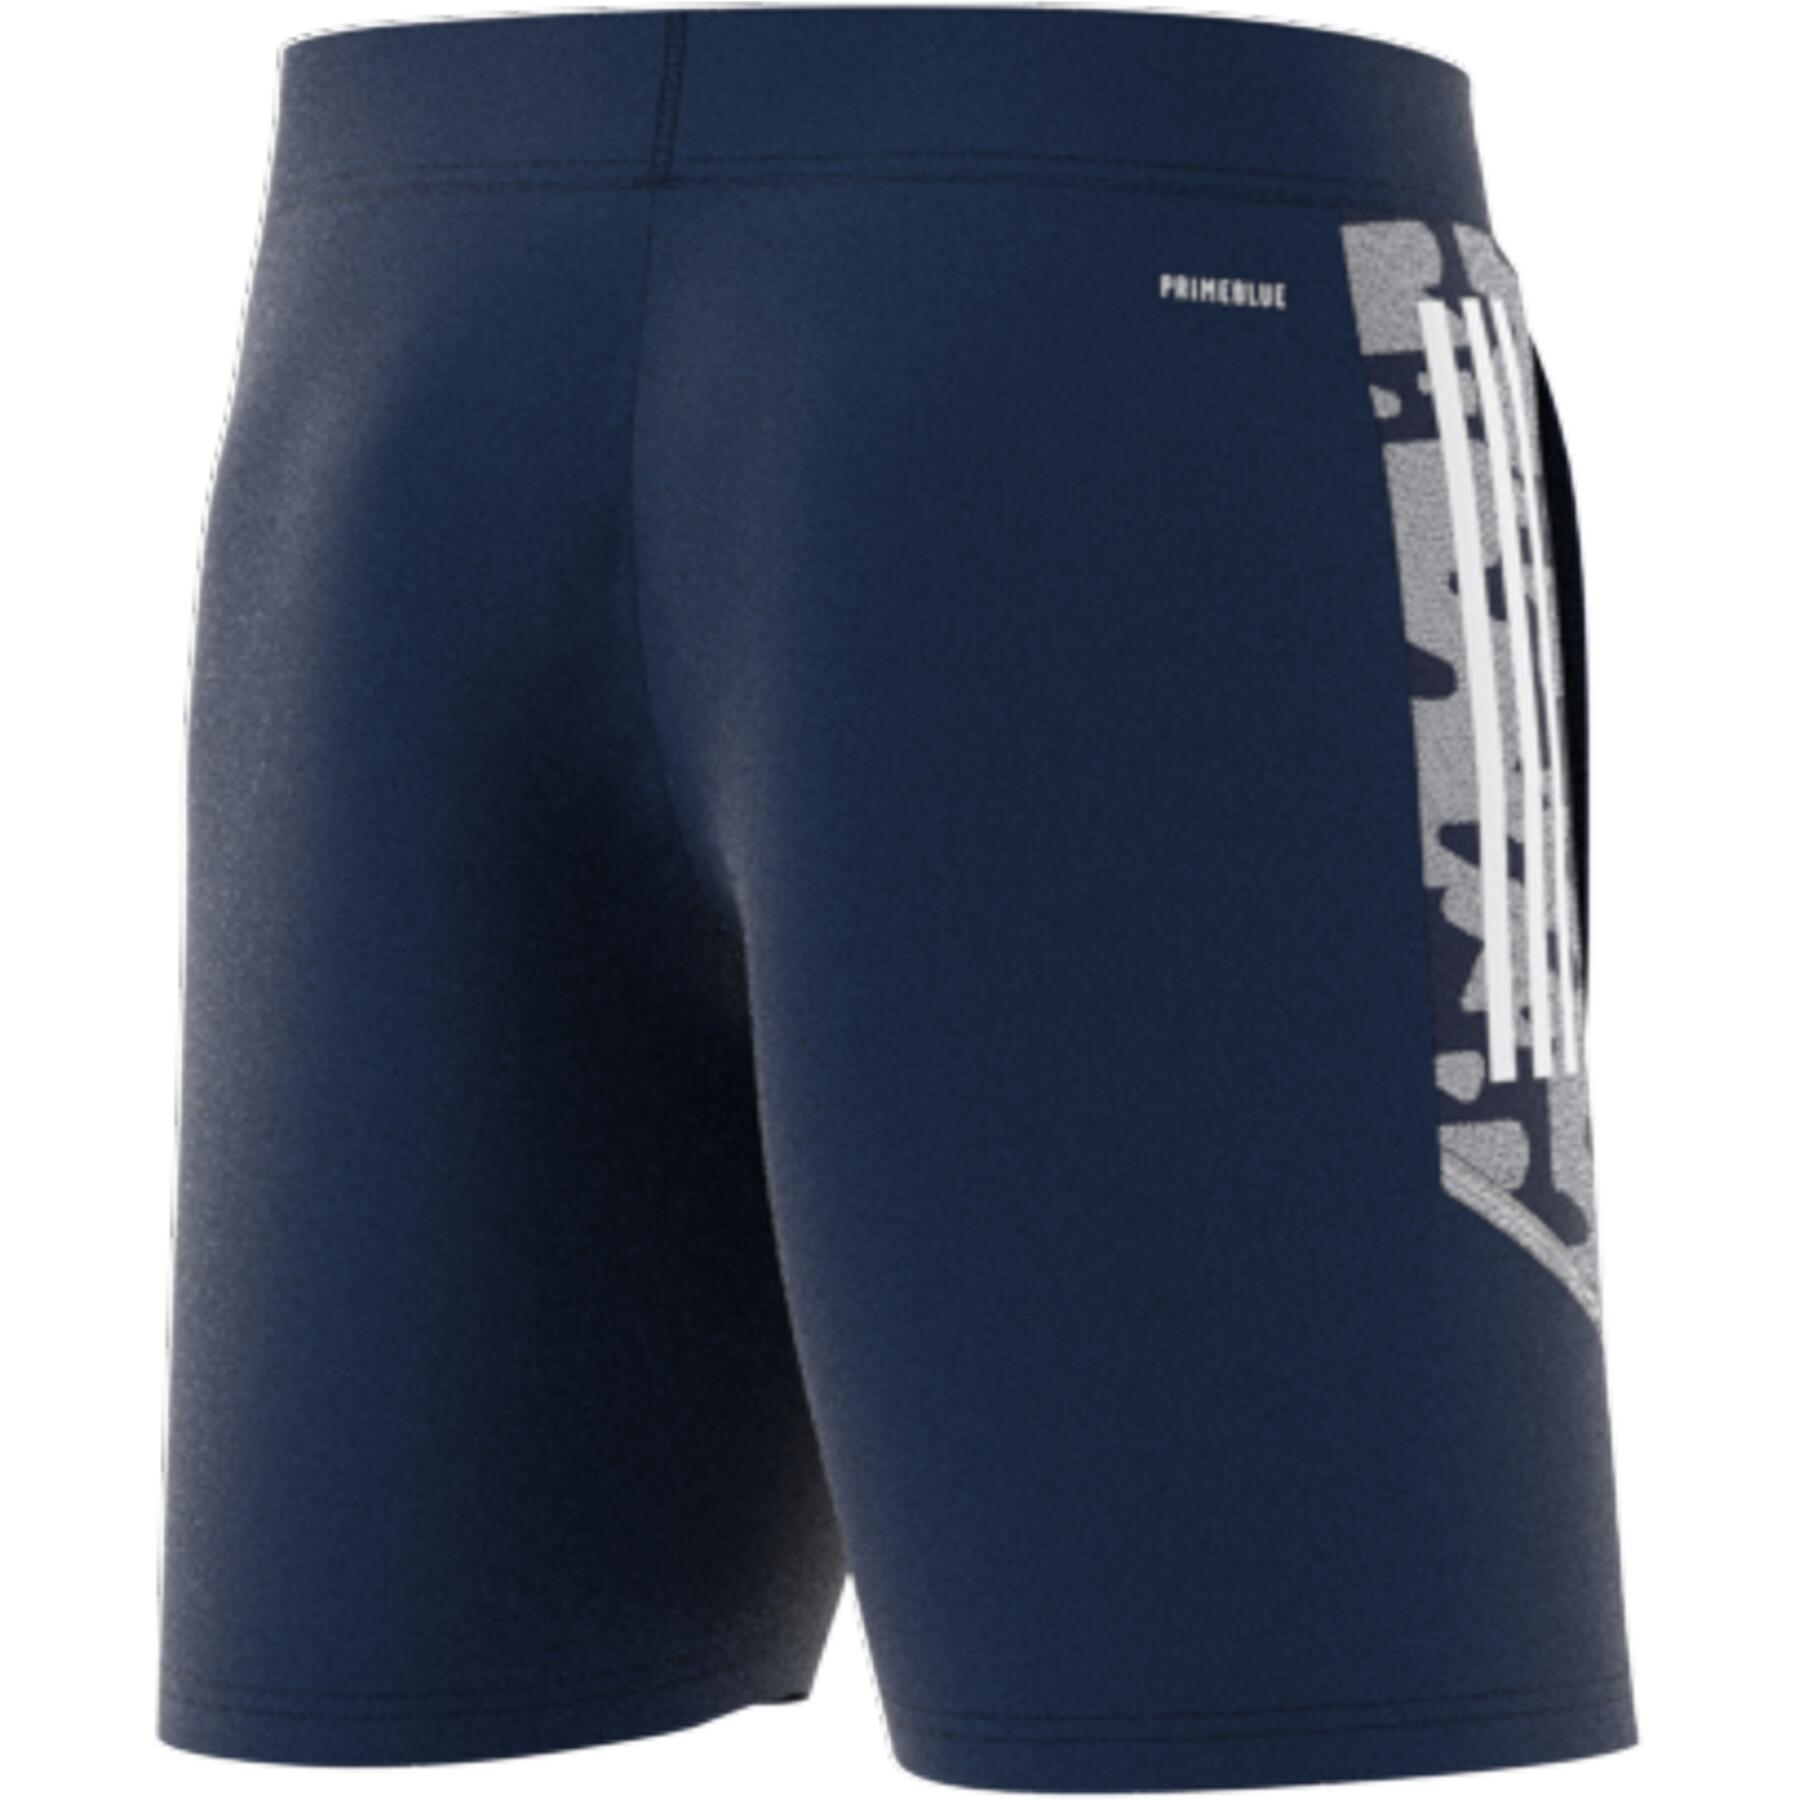 Pantalones cortos de entrenamiento adidas Condivo 21 Primeblue